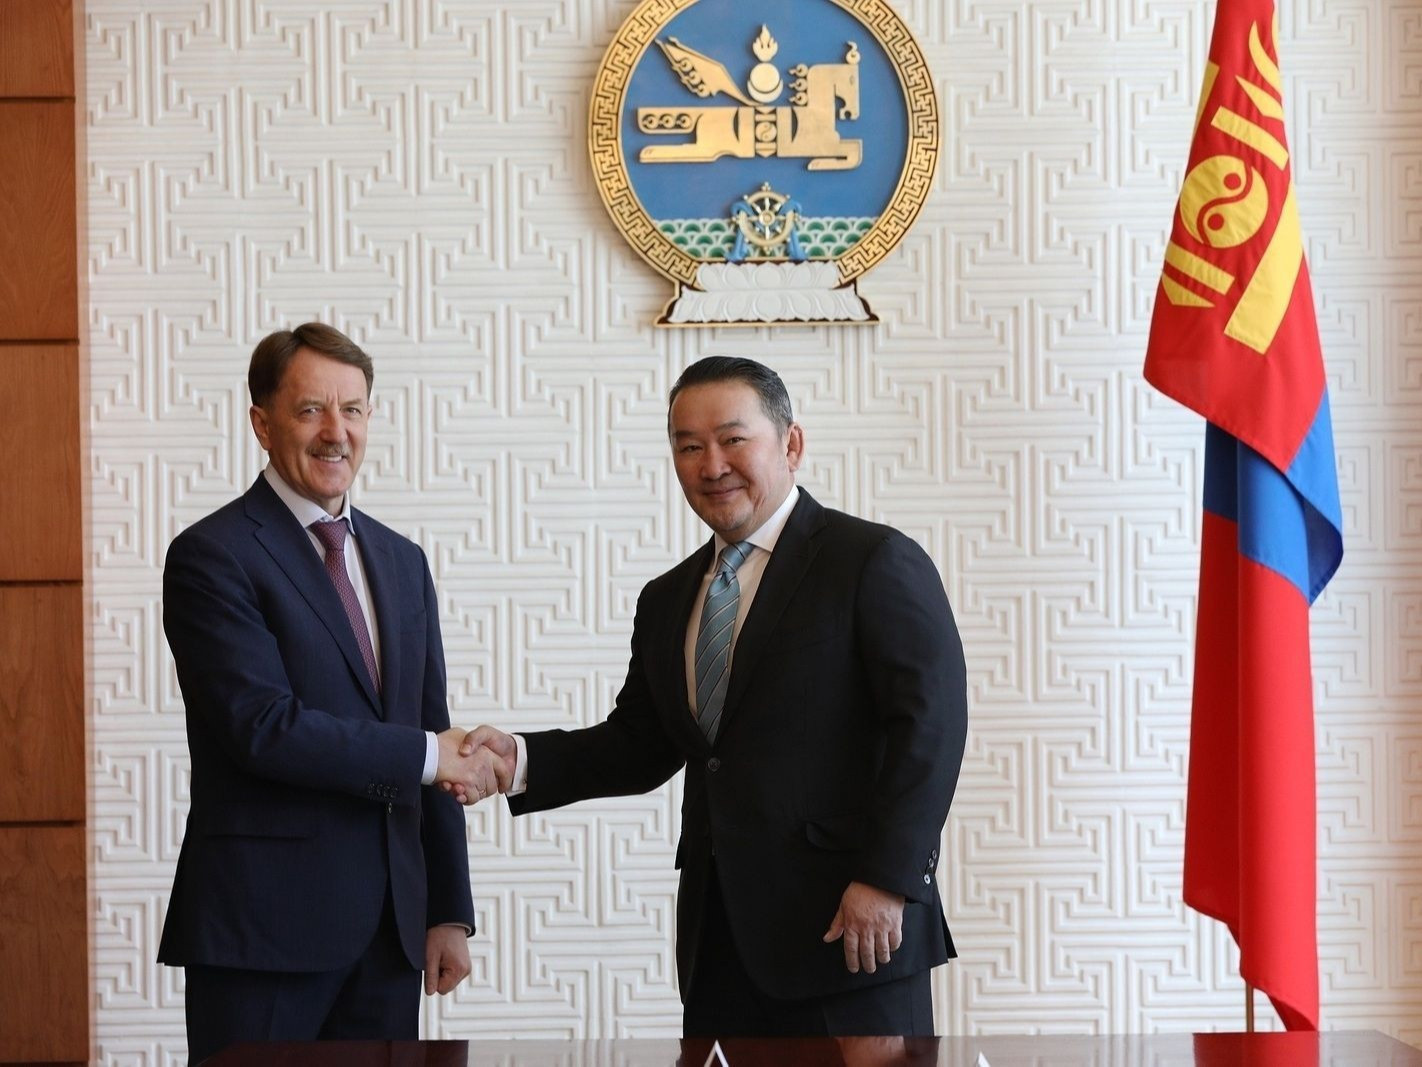 ОХУ-аас Монгол Улсад 100 тэрбум рублийн зээл олгох зарчмын шийдвэр гаргажээ